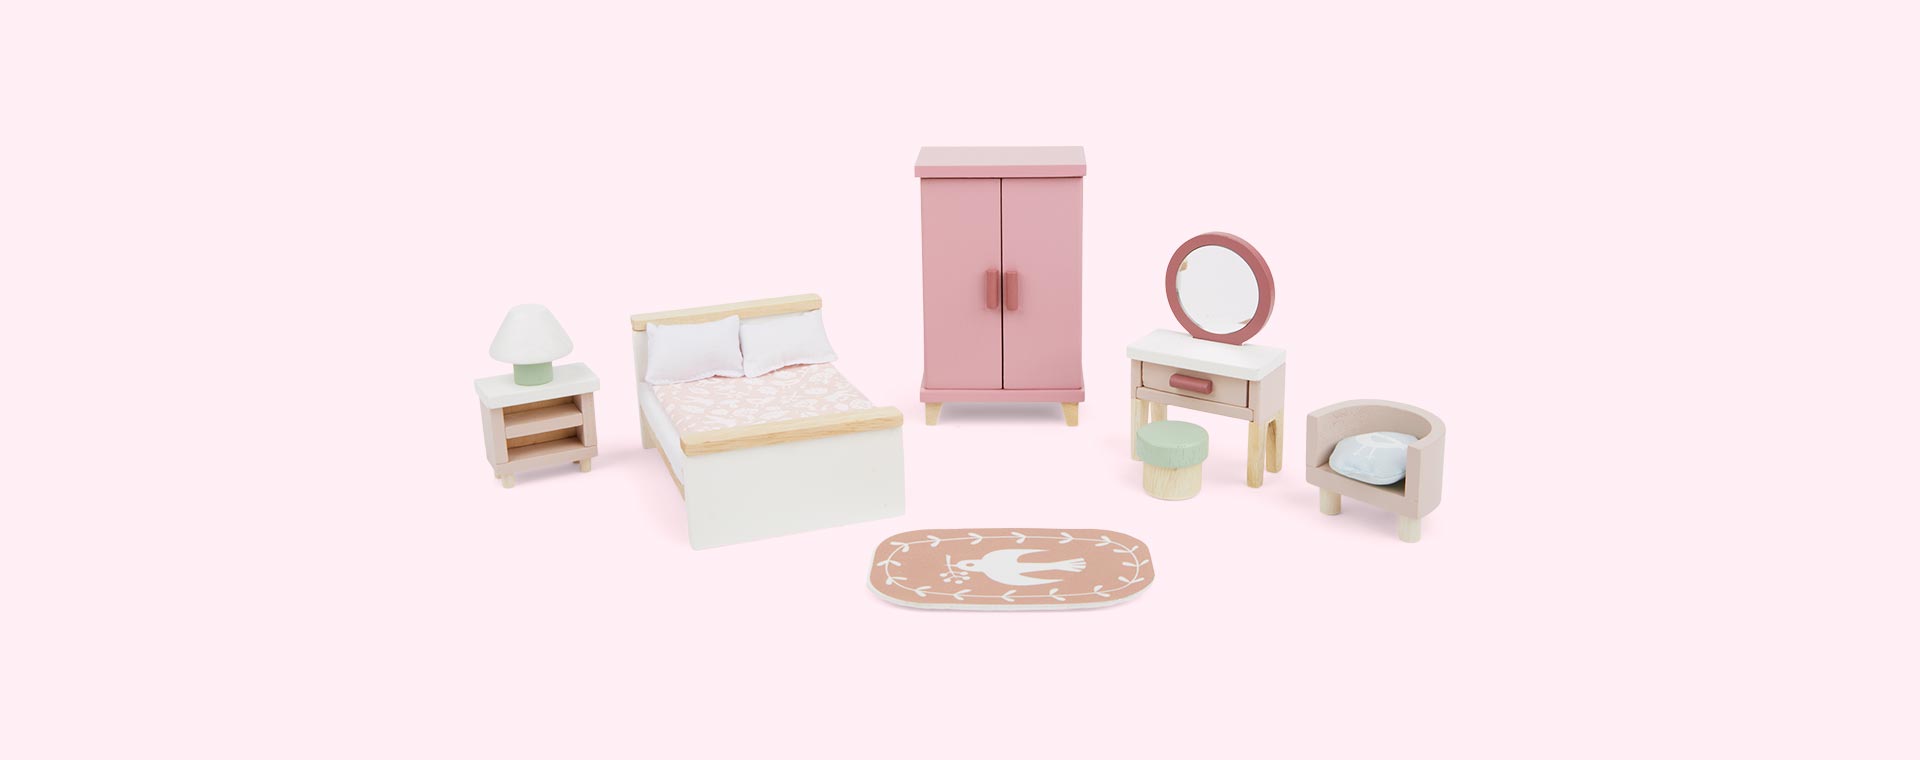 Buy the Tender Leaf Toys Dolls House Bedroom Furniture at KIDLY UK